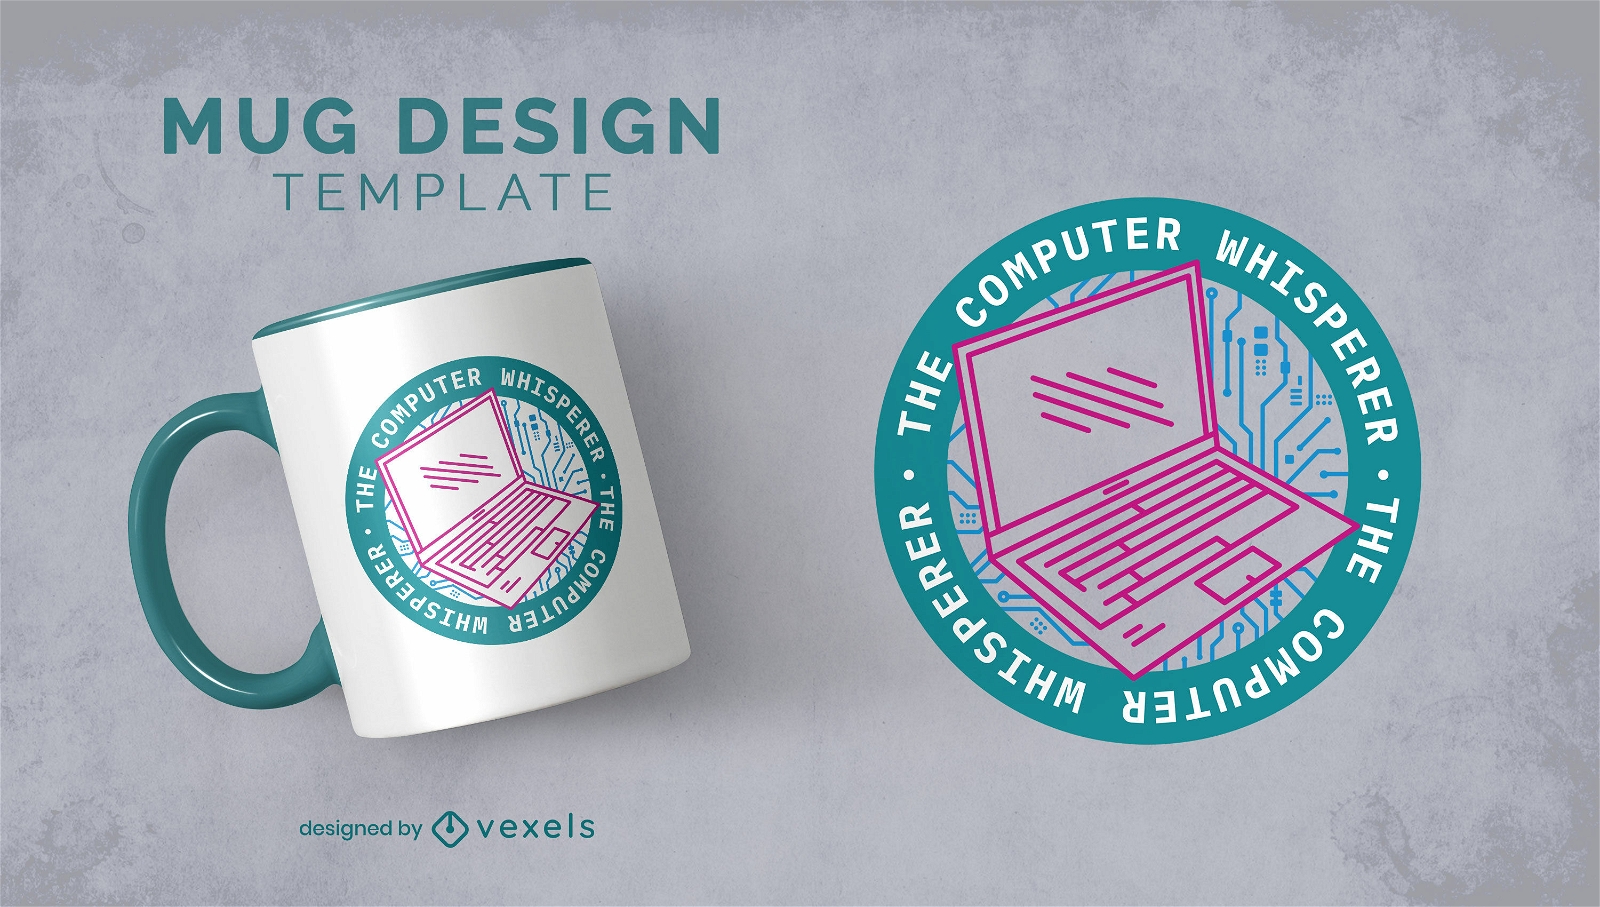 Computer whisperer mug design